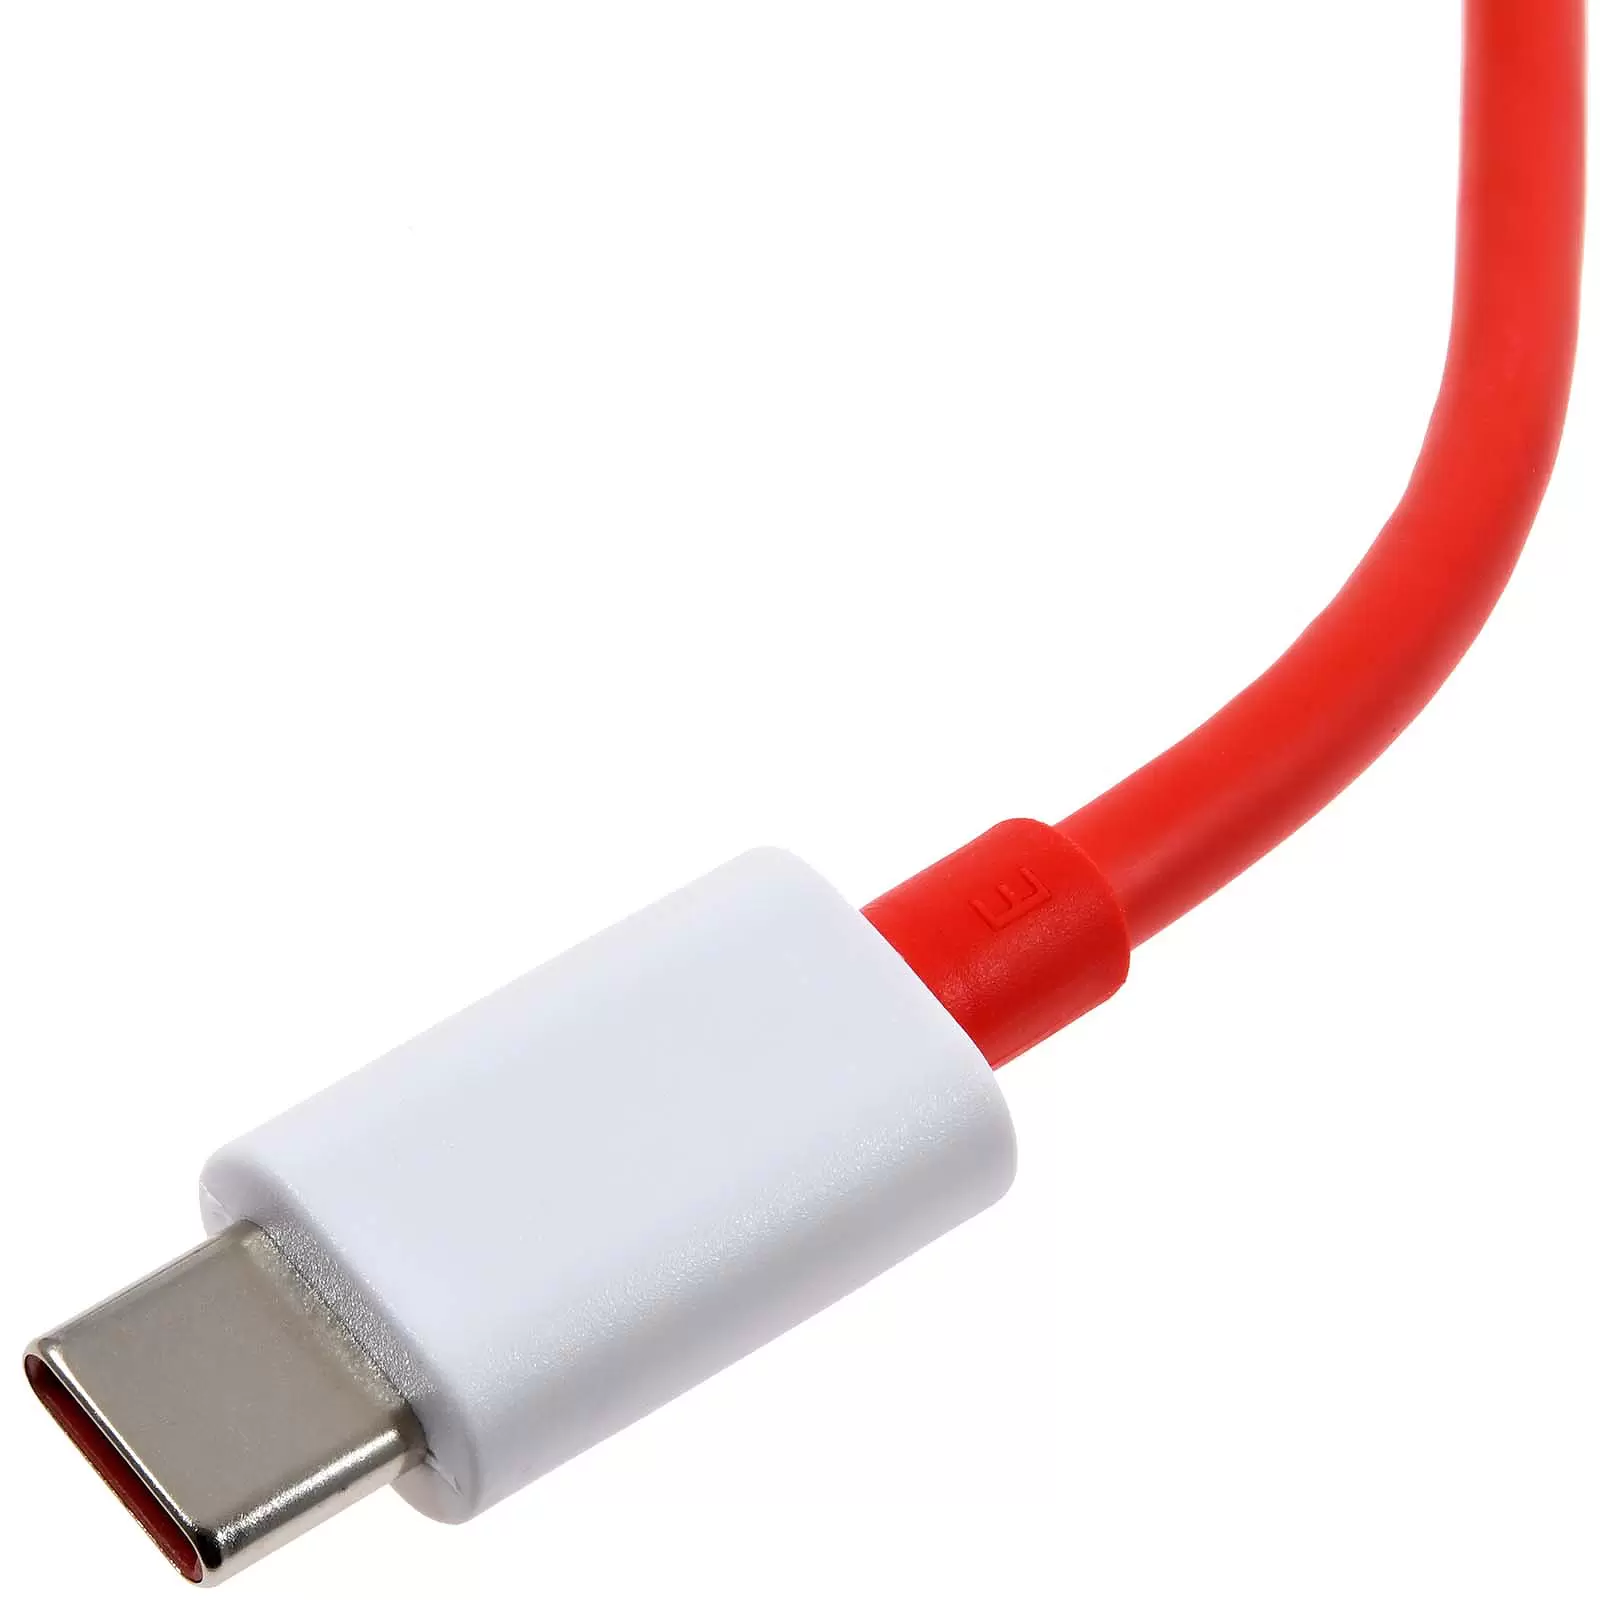 OnePlus Dash D301 Schnellladekabel Datenkabel USB-A auf USB-C 1m rot